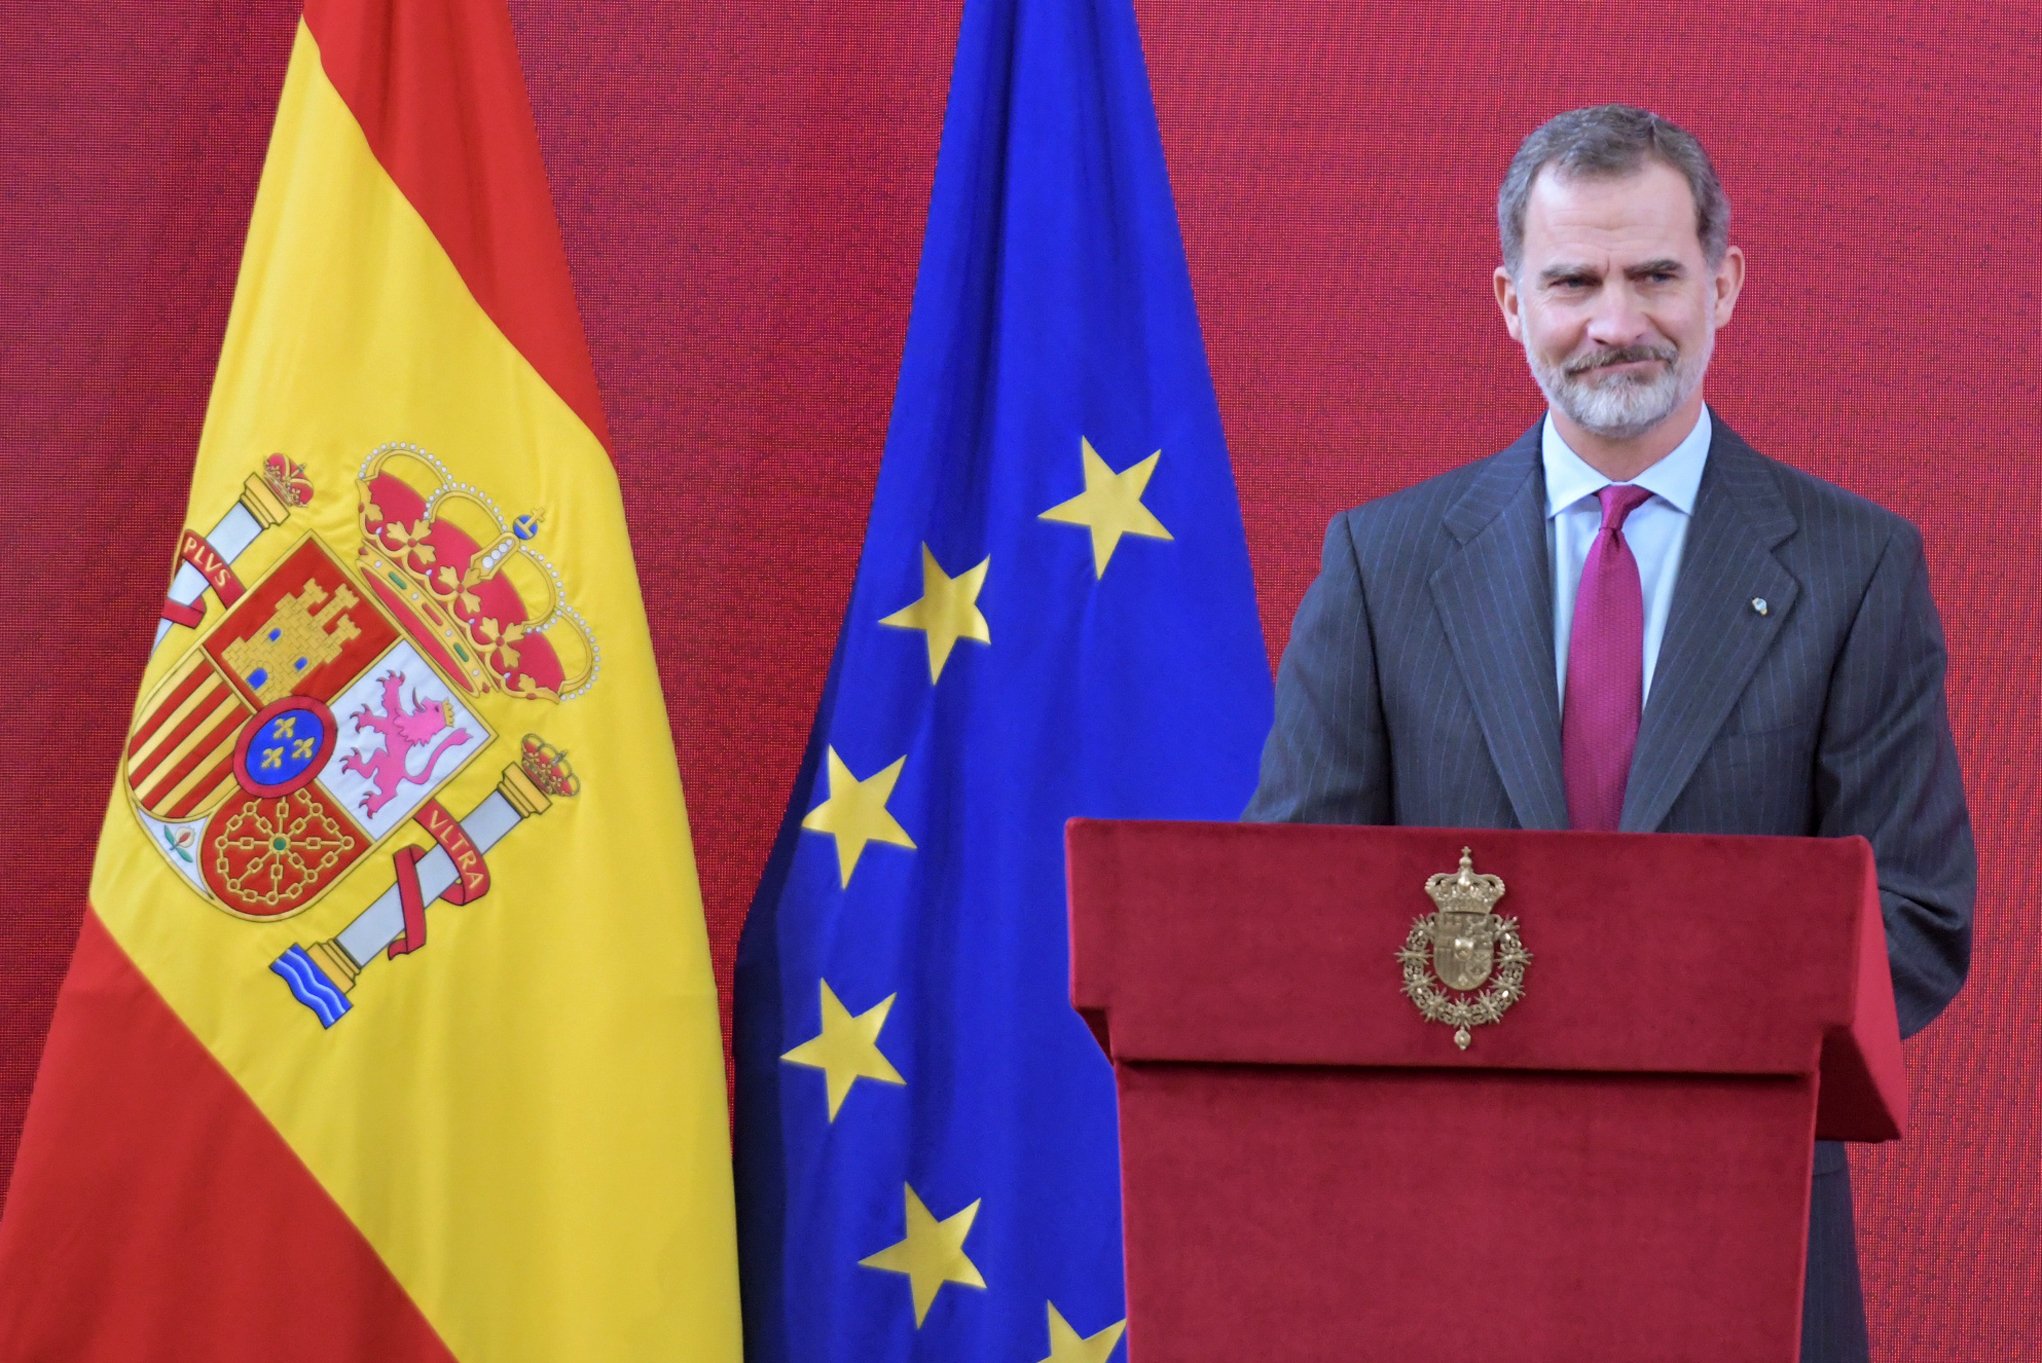 El coronavirus obliga a cancel·lar dos actes dels Reis a Madrid i Logronyo